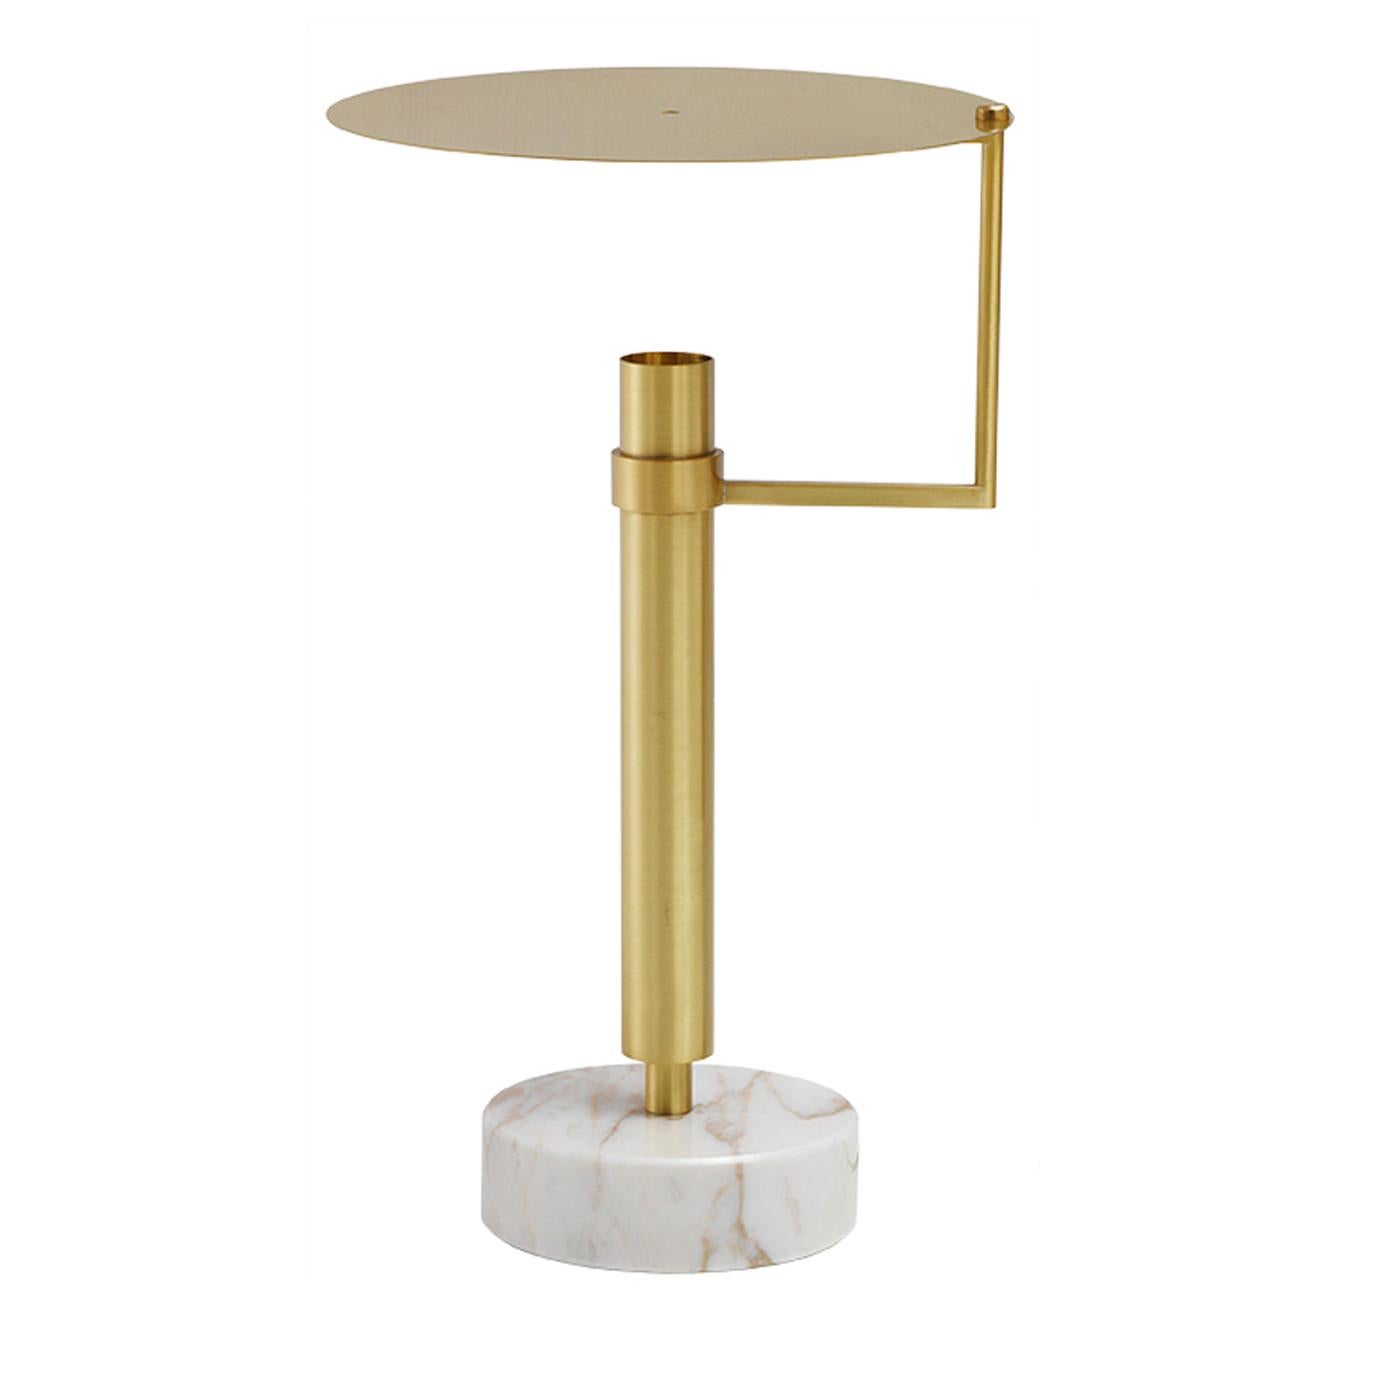 Simultanément irrévérencieuse, chic et luxueuse, la lampe de table Meccano constitue un accent parfait dans une entrée. Sur un socle rond en marbre Emperador, la lampe est fabriquée en laiton avec une finition satinée et dispose d'un disque original